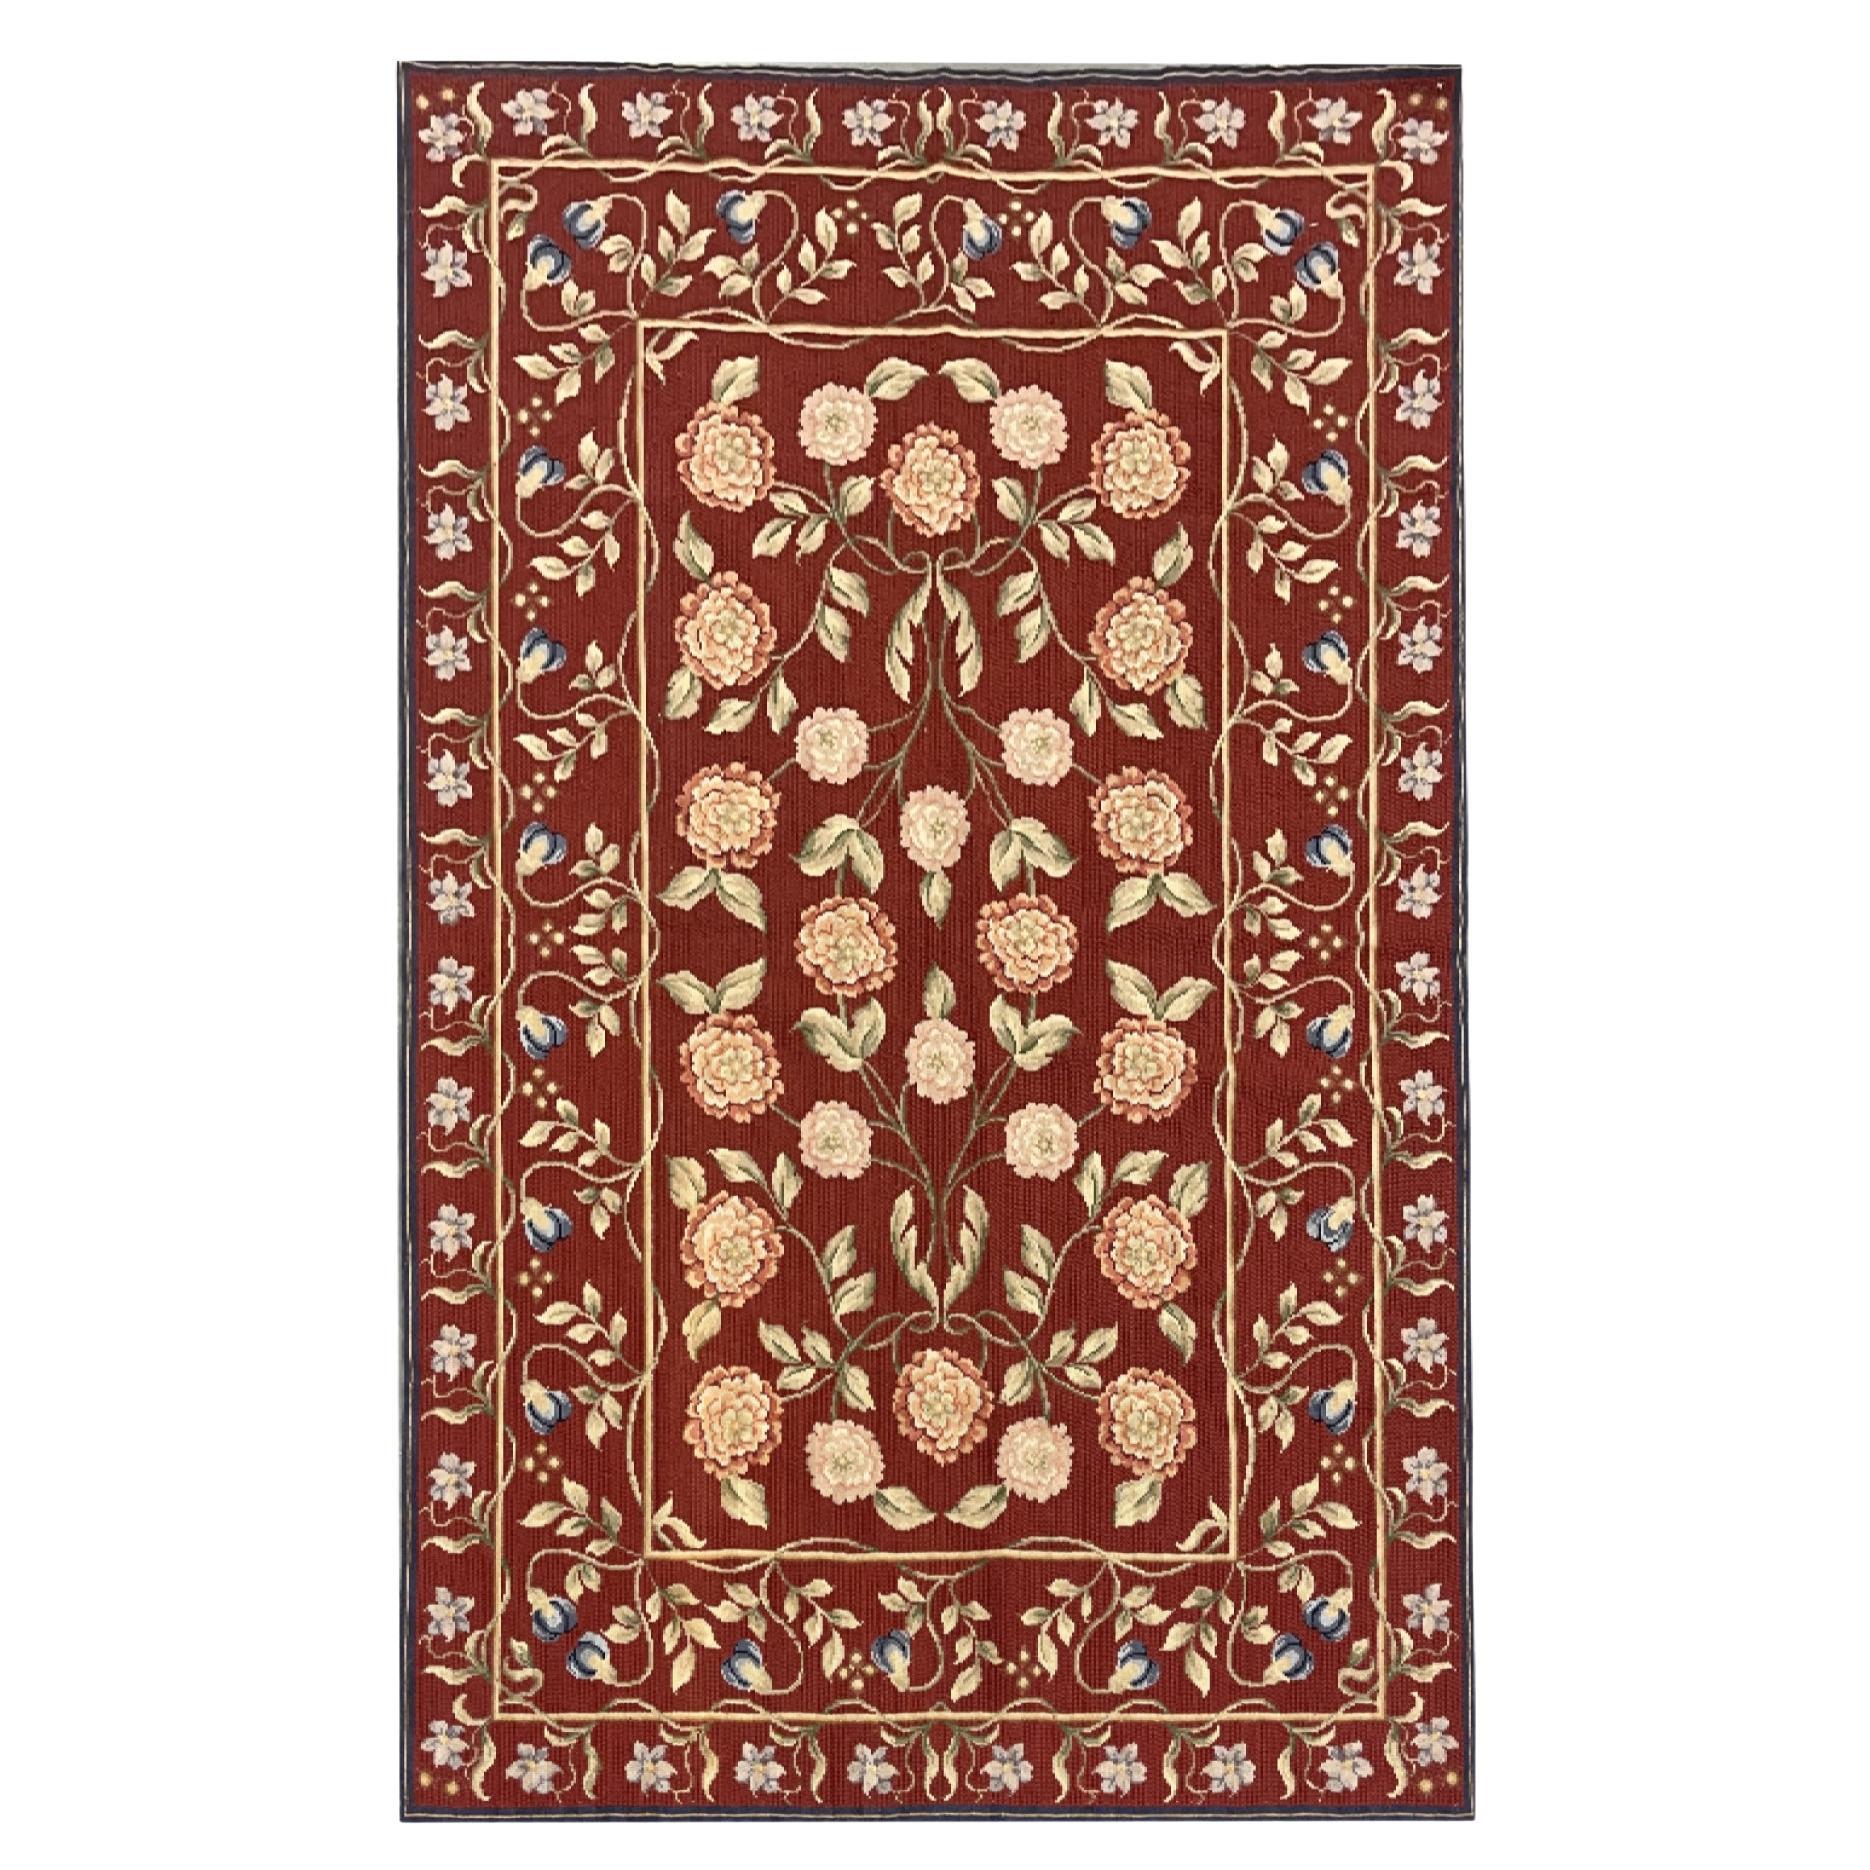 Französischer Aubusson-Teppich in Rot, traditioneller Teppich, handgewebt aus Wolle mit floraler Nadelspitze